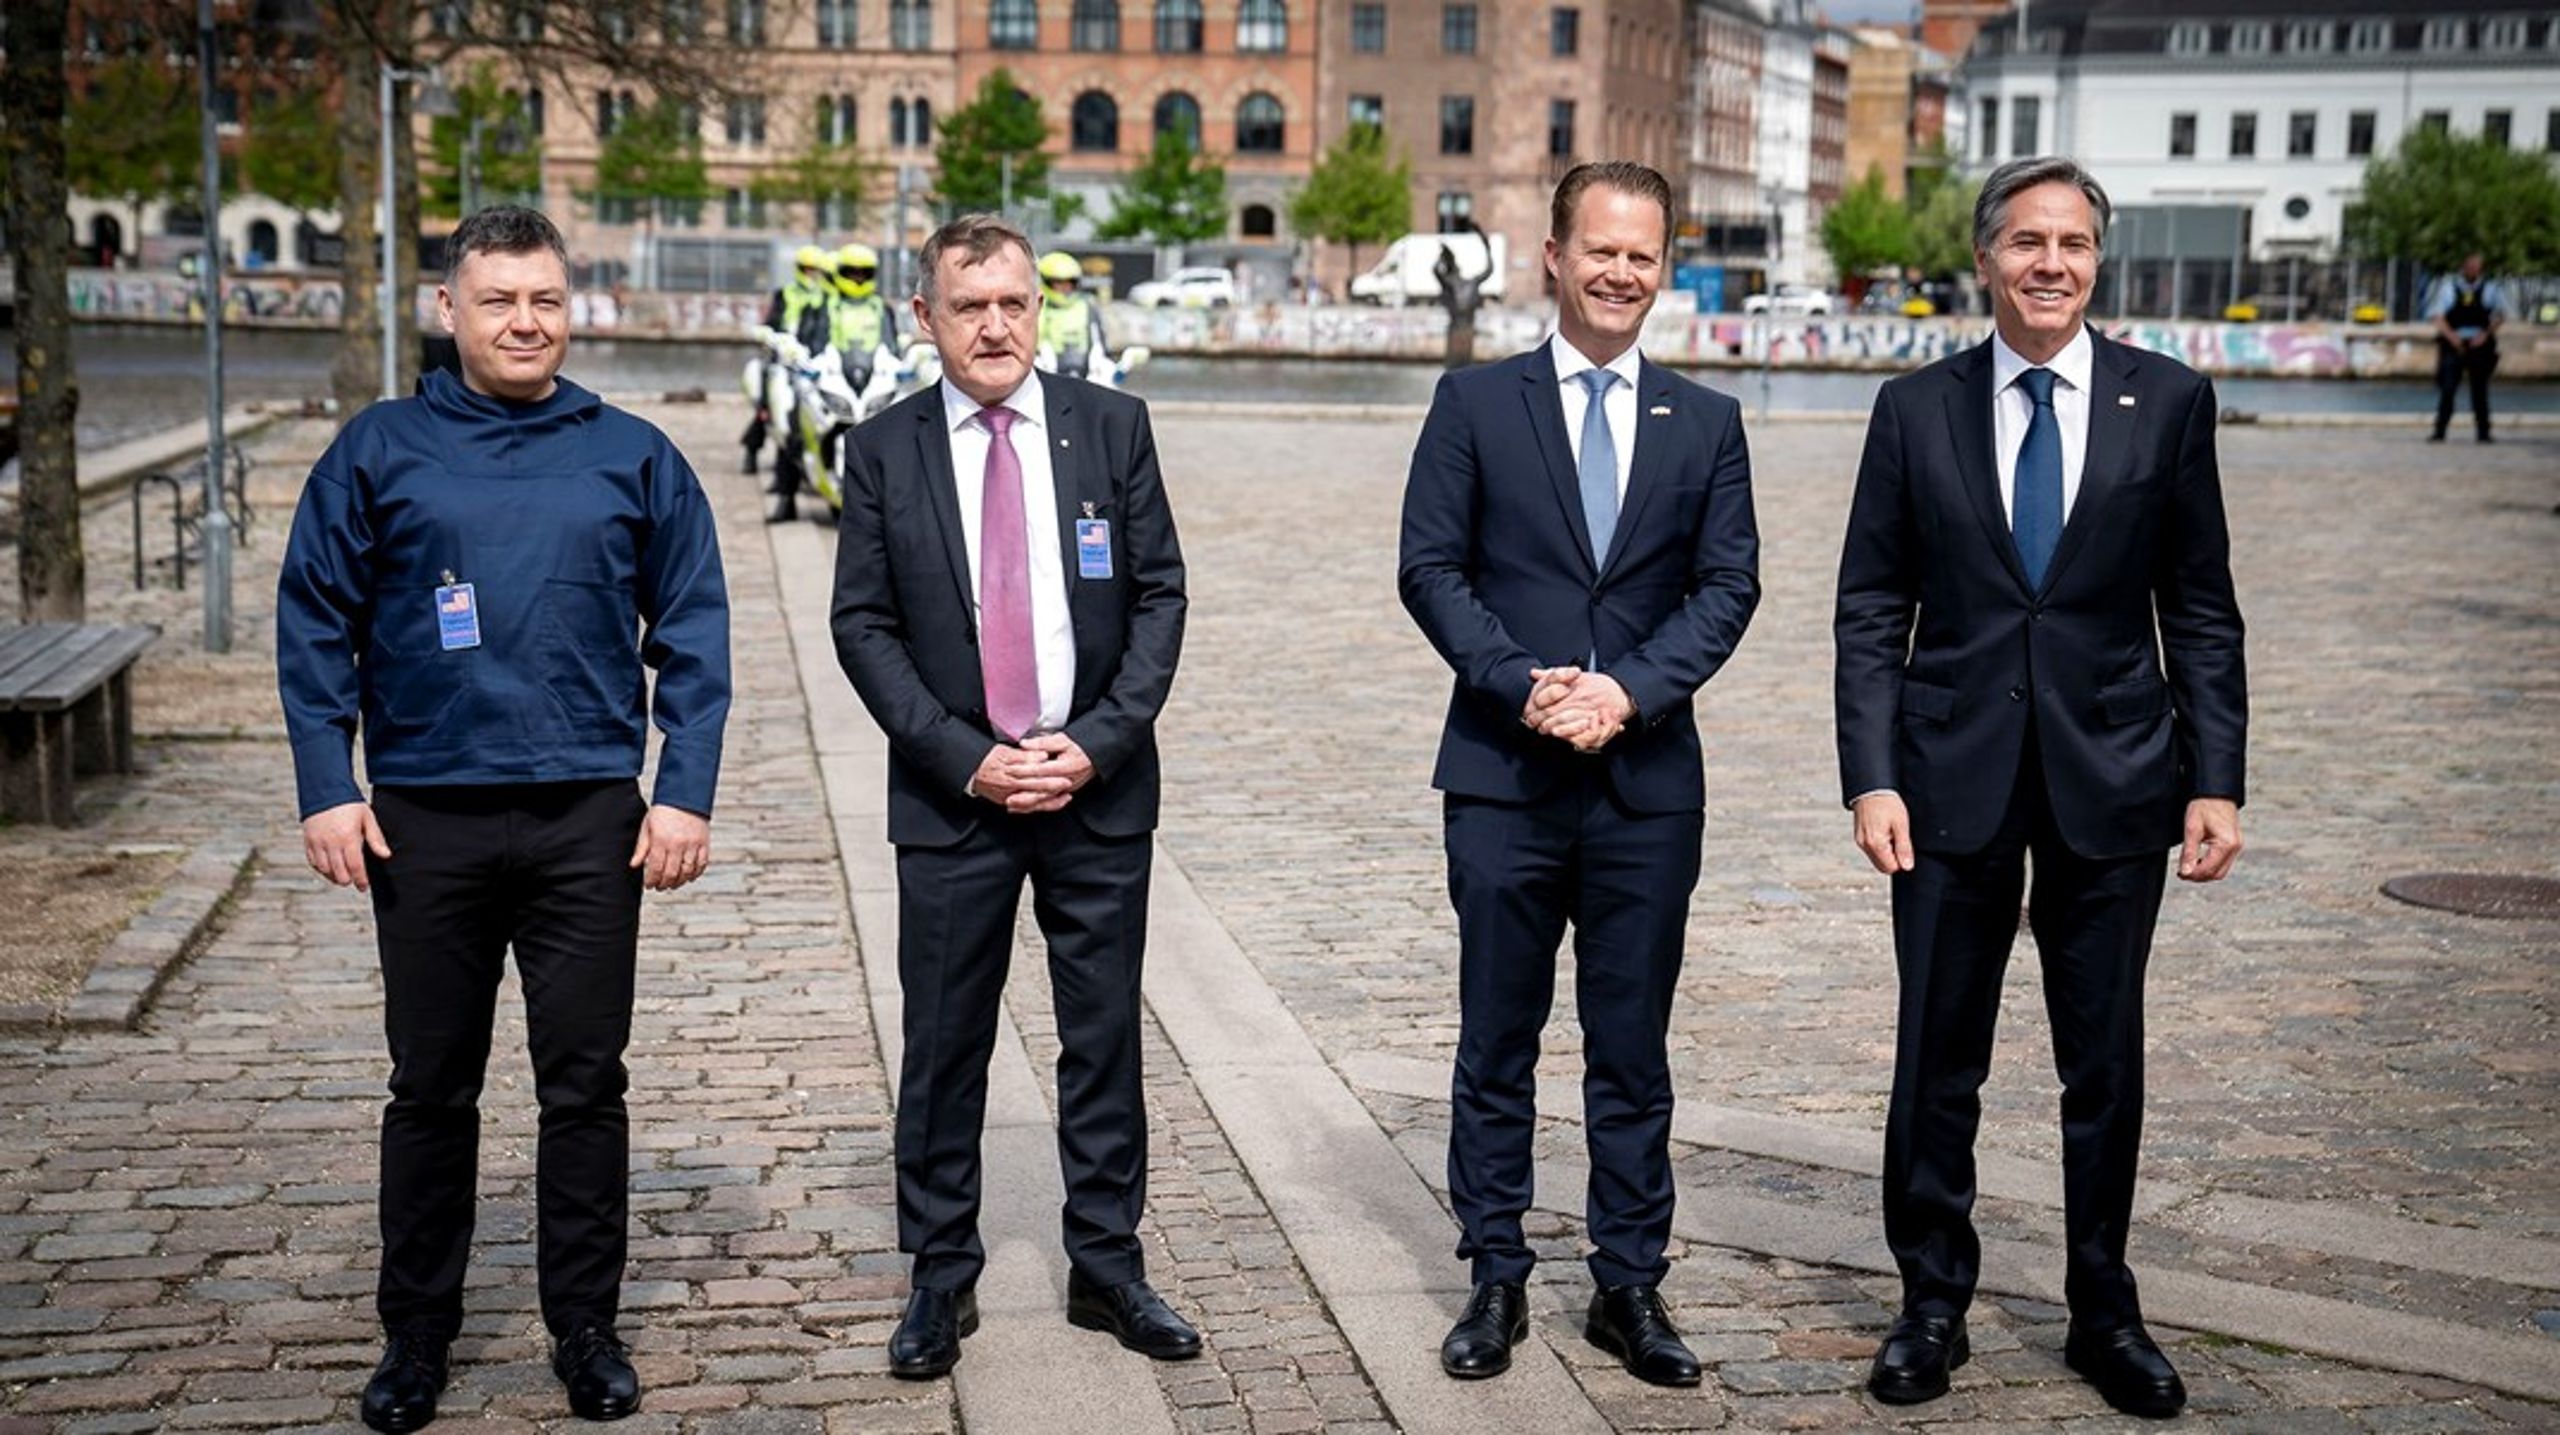 Fra venstre: Grønlands landsstyremedlem for udenrigsanliggender Pele Broberg, Færøernes landsstyremedlem for udenrigsanliggender Jenis av Rana, Danmarks udenrigsminister Jeppe Kofod (S) og den amerikanske udenrigsminister Antony Blinken under sidstnævntes besøg i København i maj.